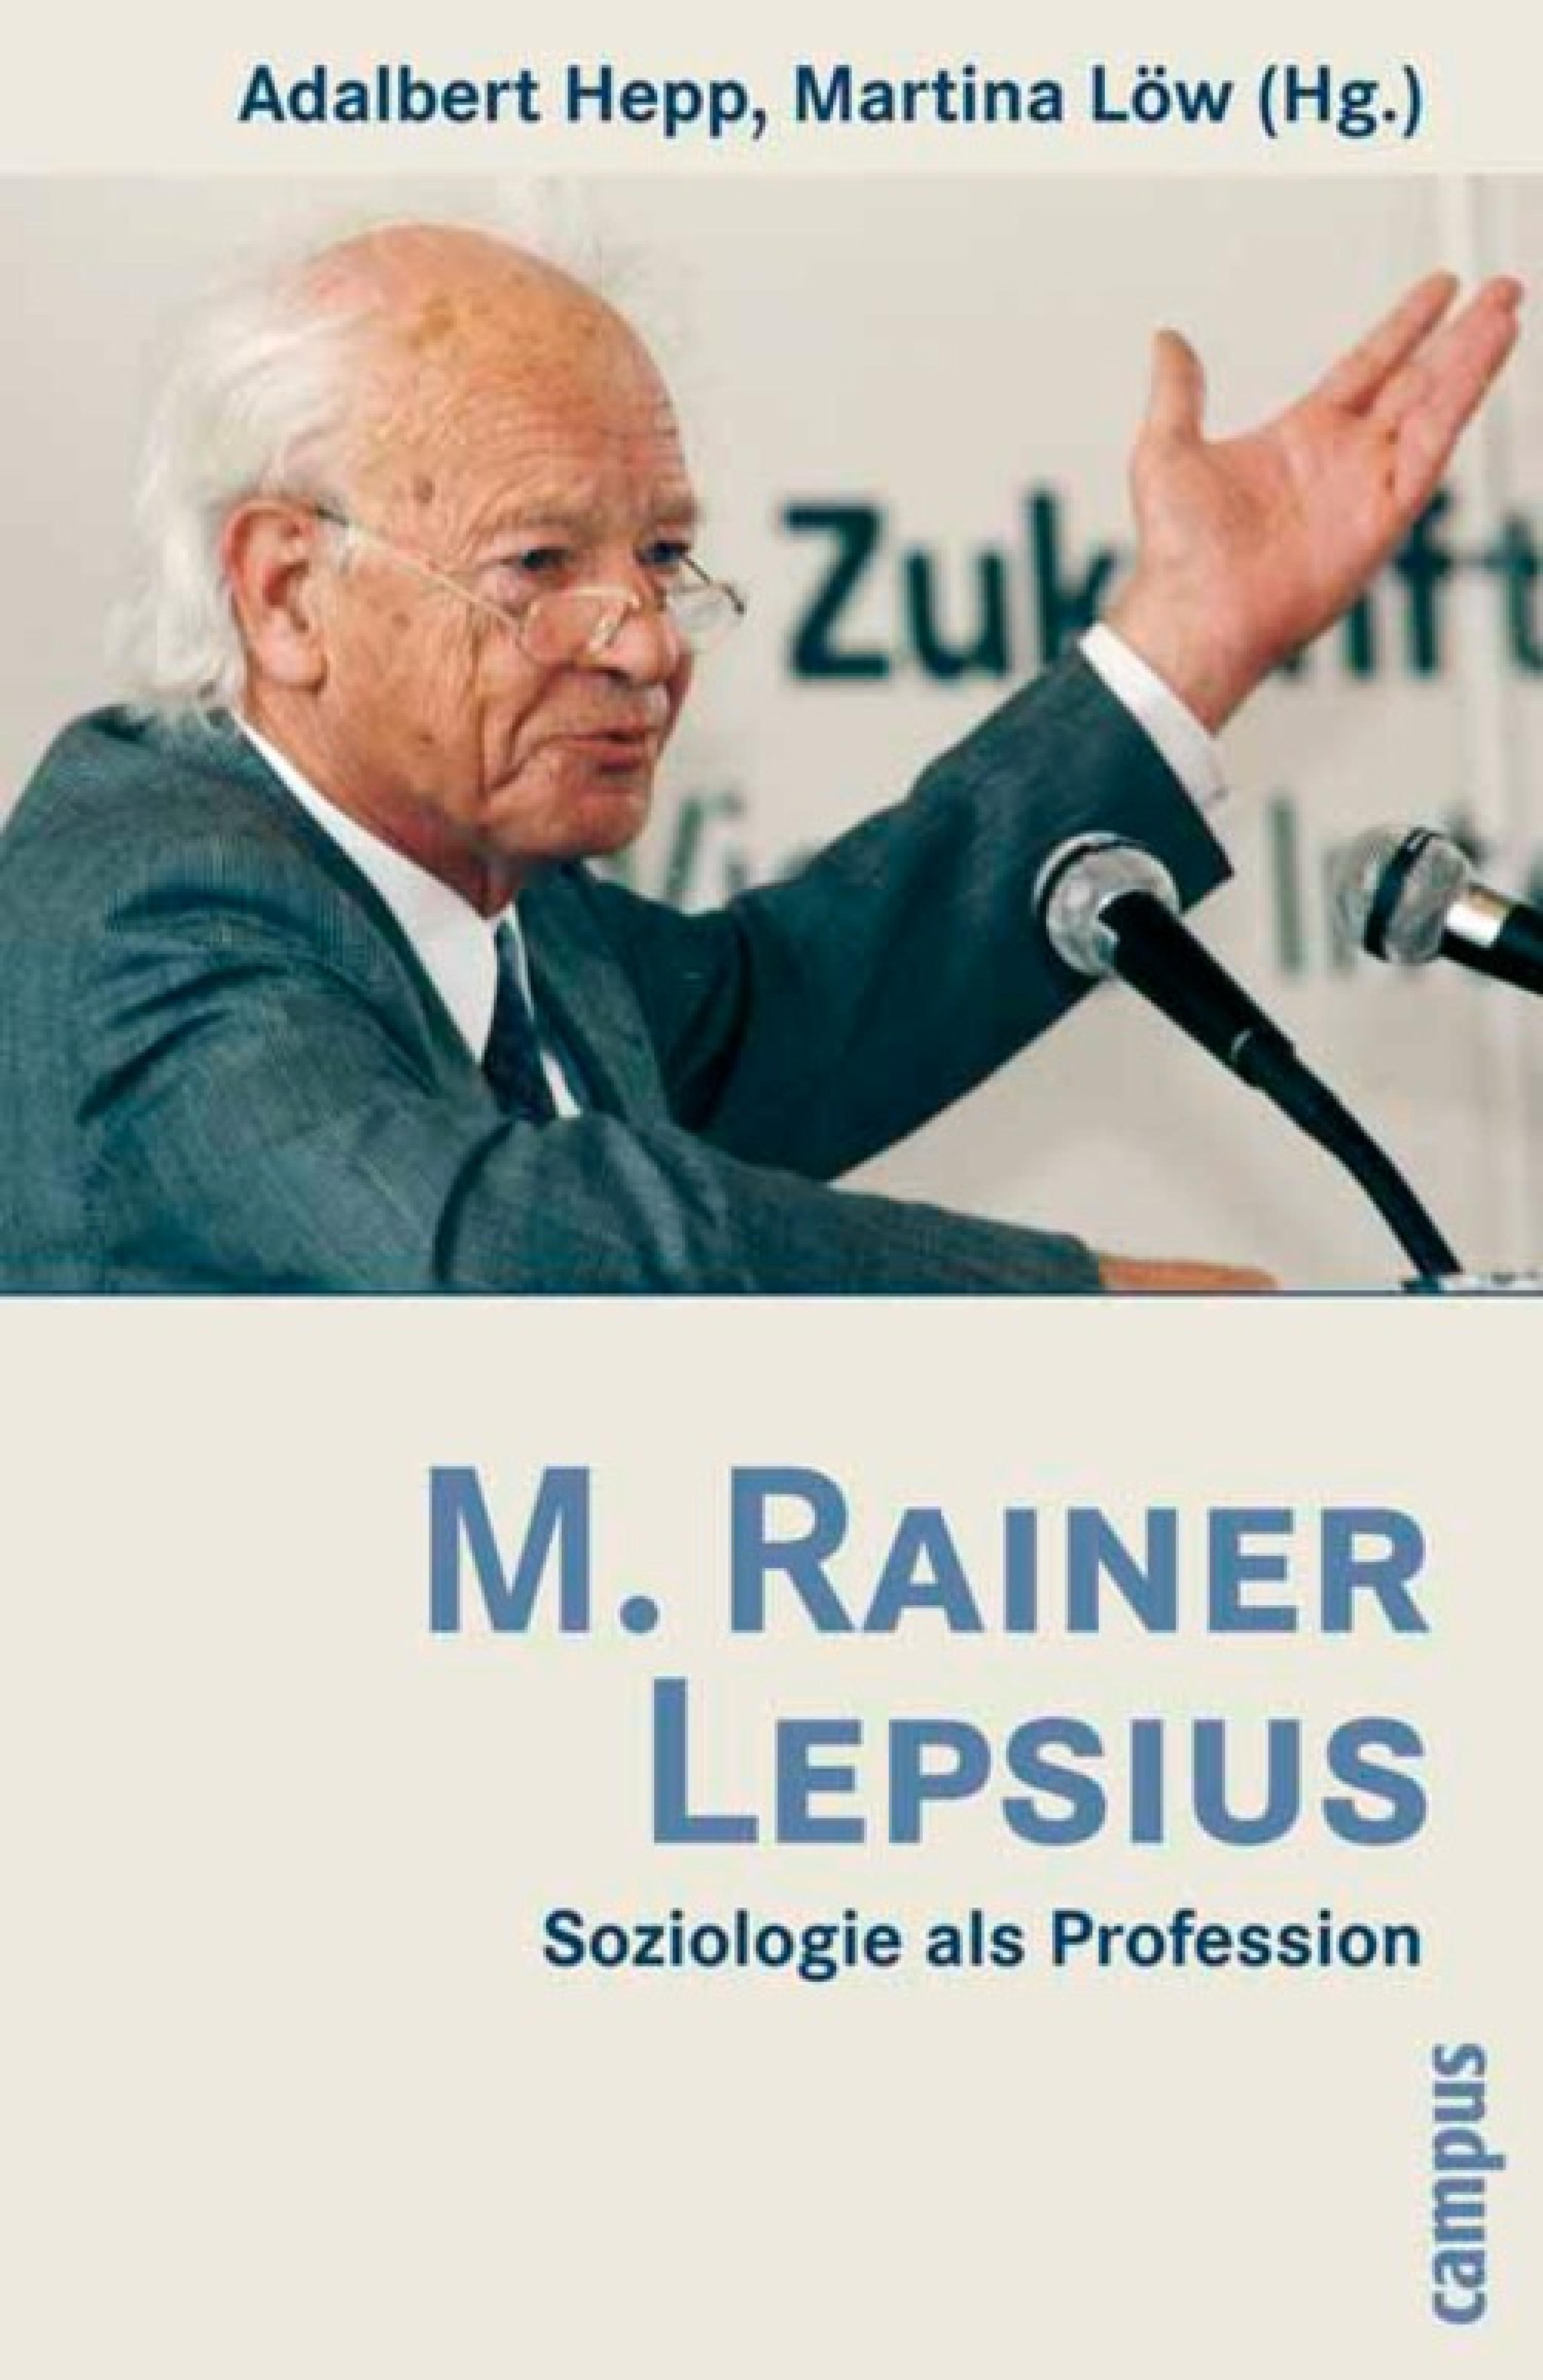 M. Rainer Lepsius